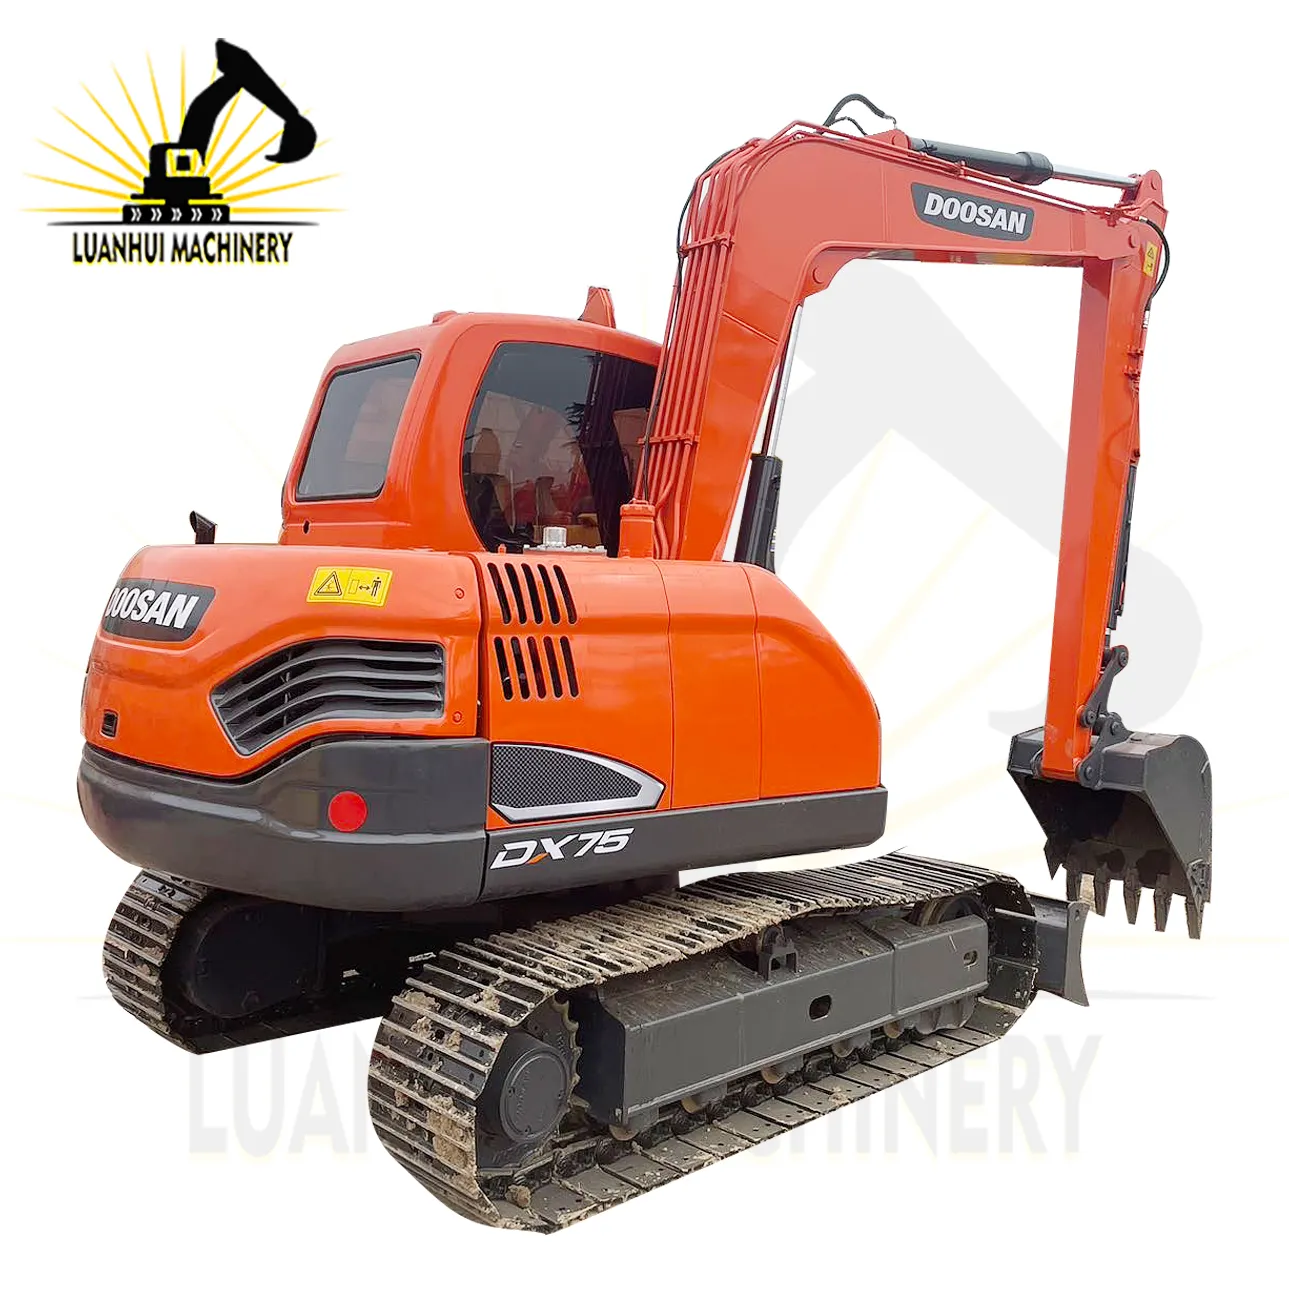 Doosan DX75 é uma máquina muito pequena com ferramentas de flexibilidade usada escavadeira hidráulica